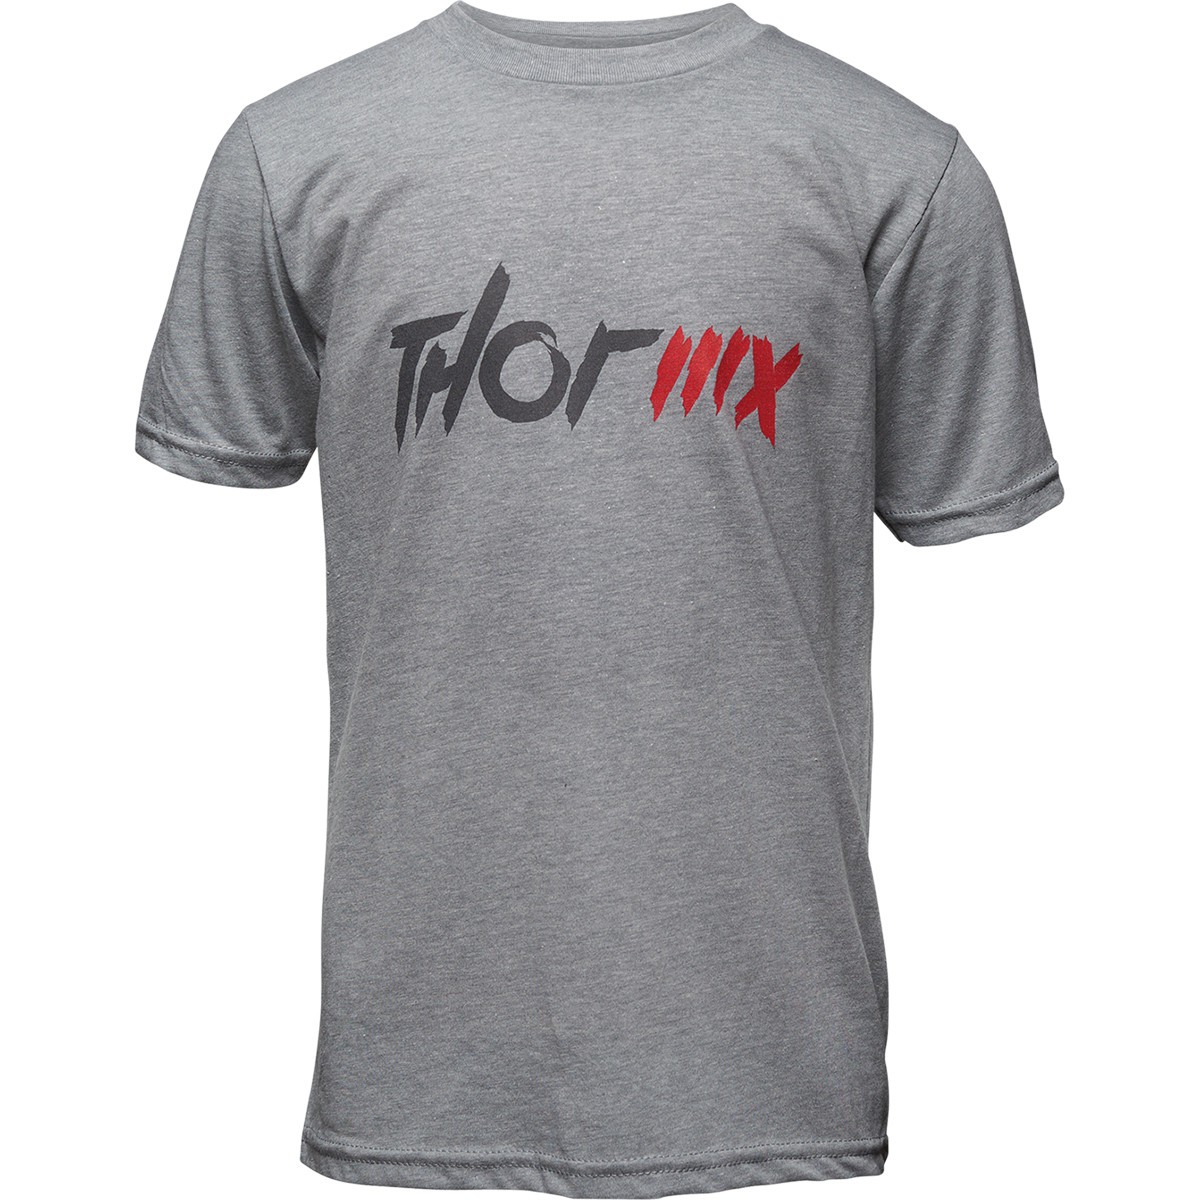 T-Shirt Enfant Manche Courte - Col Rond - THOR MX 2021